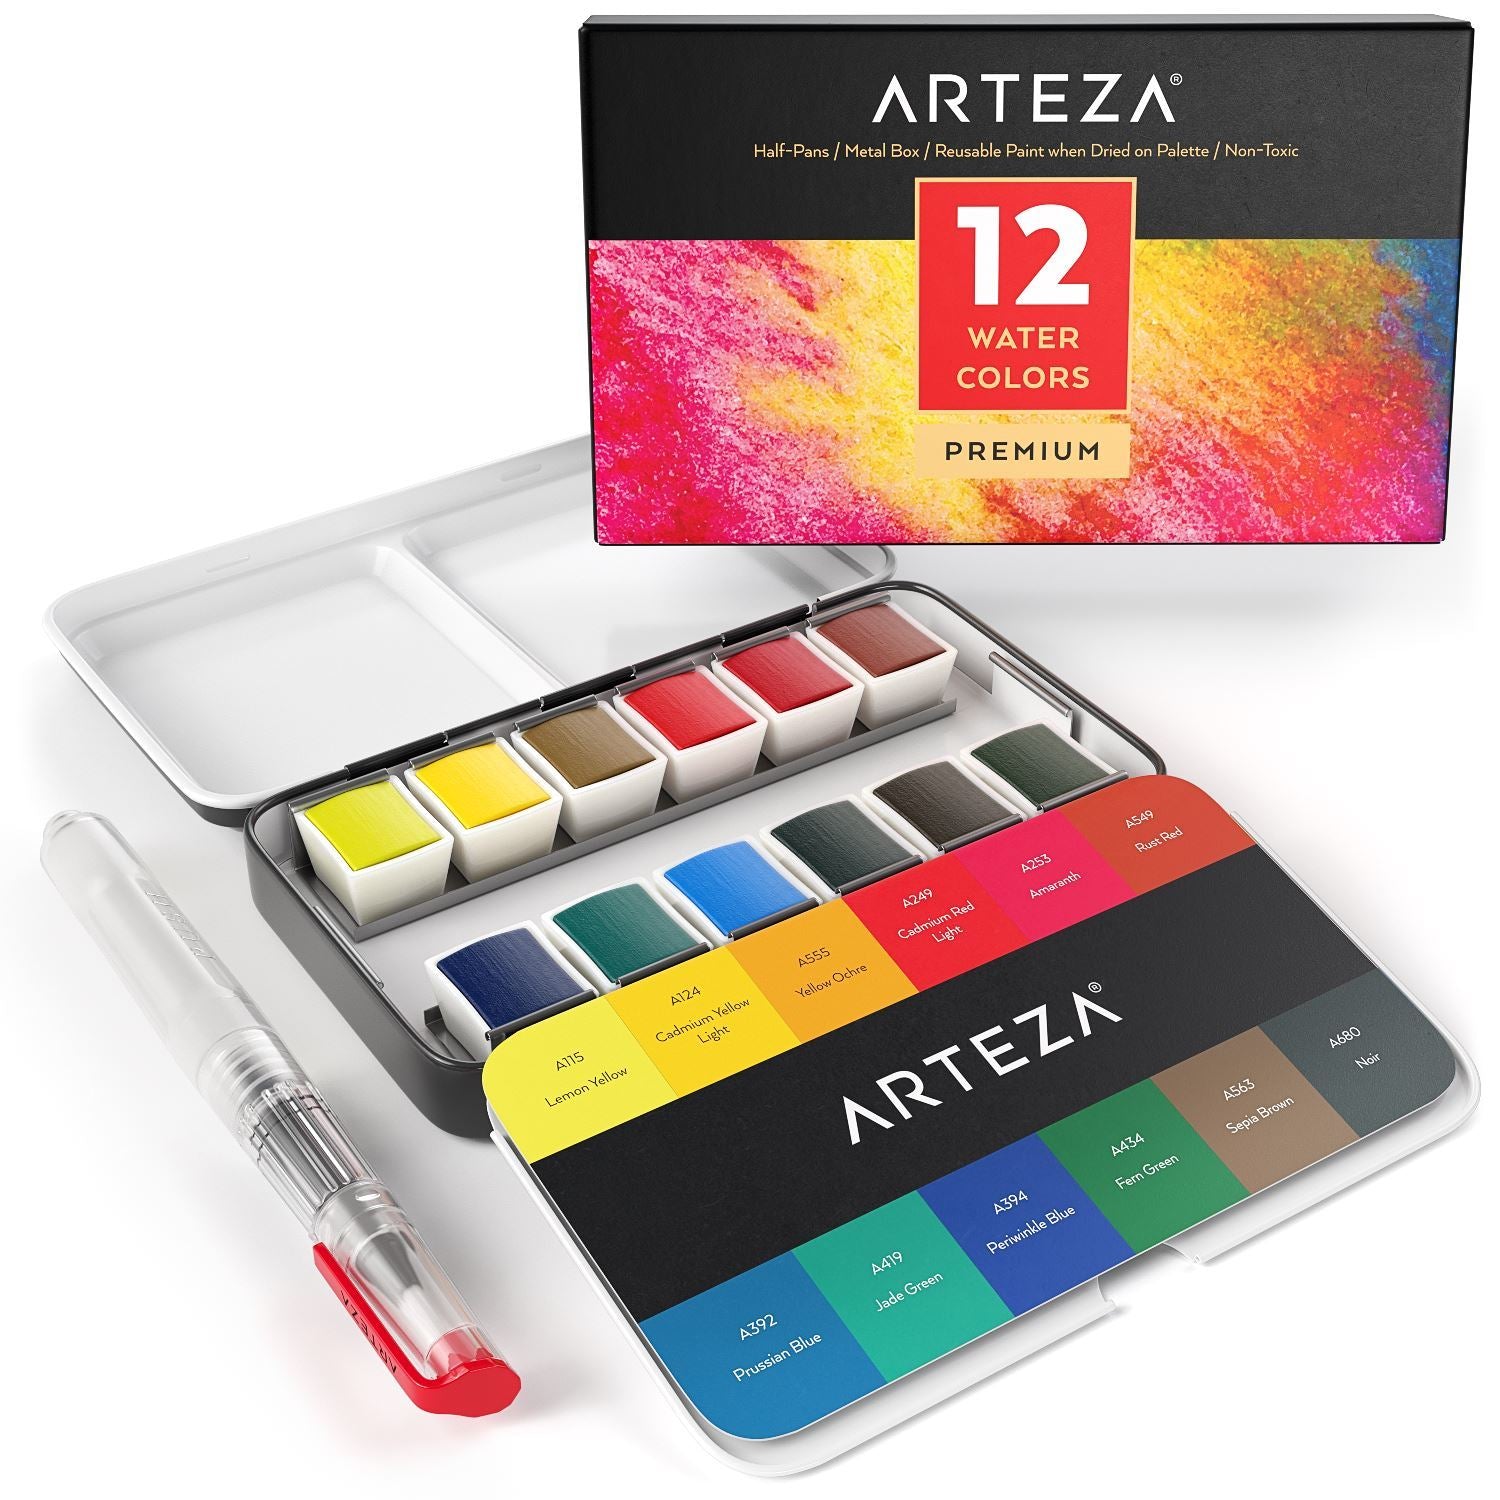 Arteza Watercolor Premium Artist Paint, medias pastillas - Juego de 12